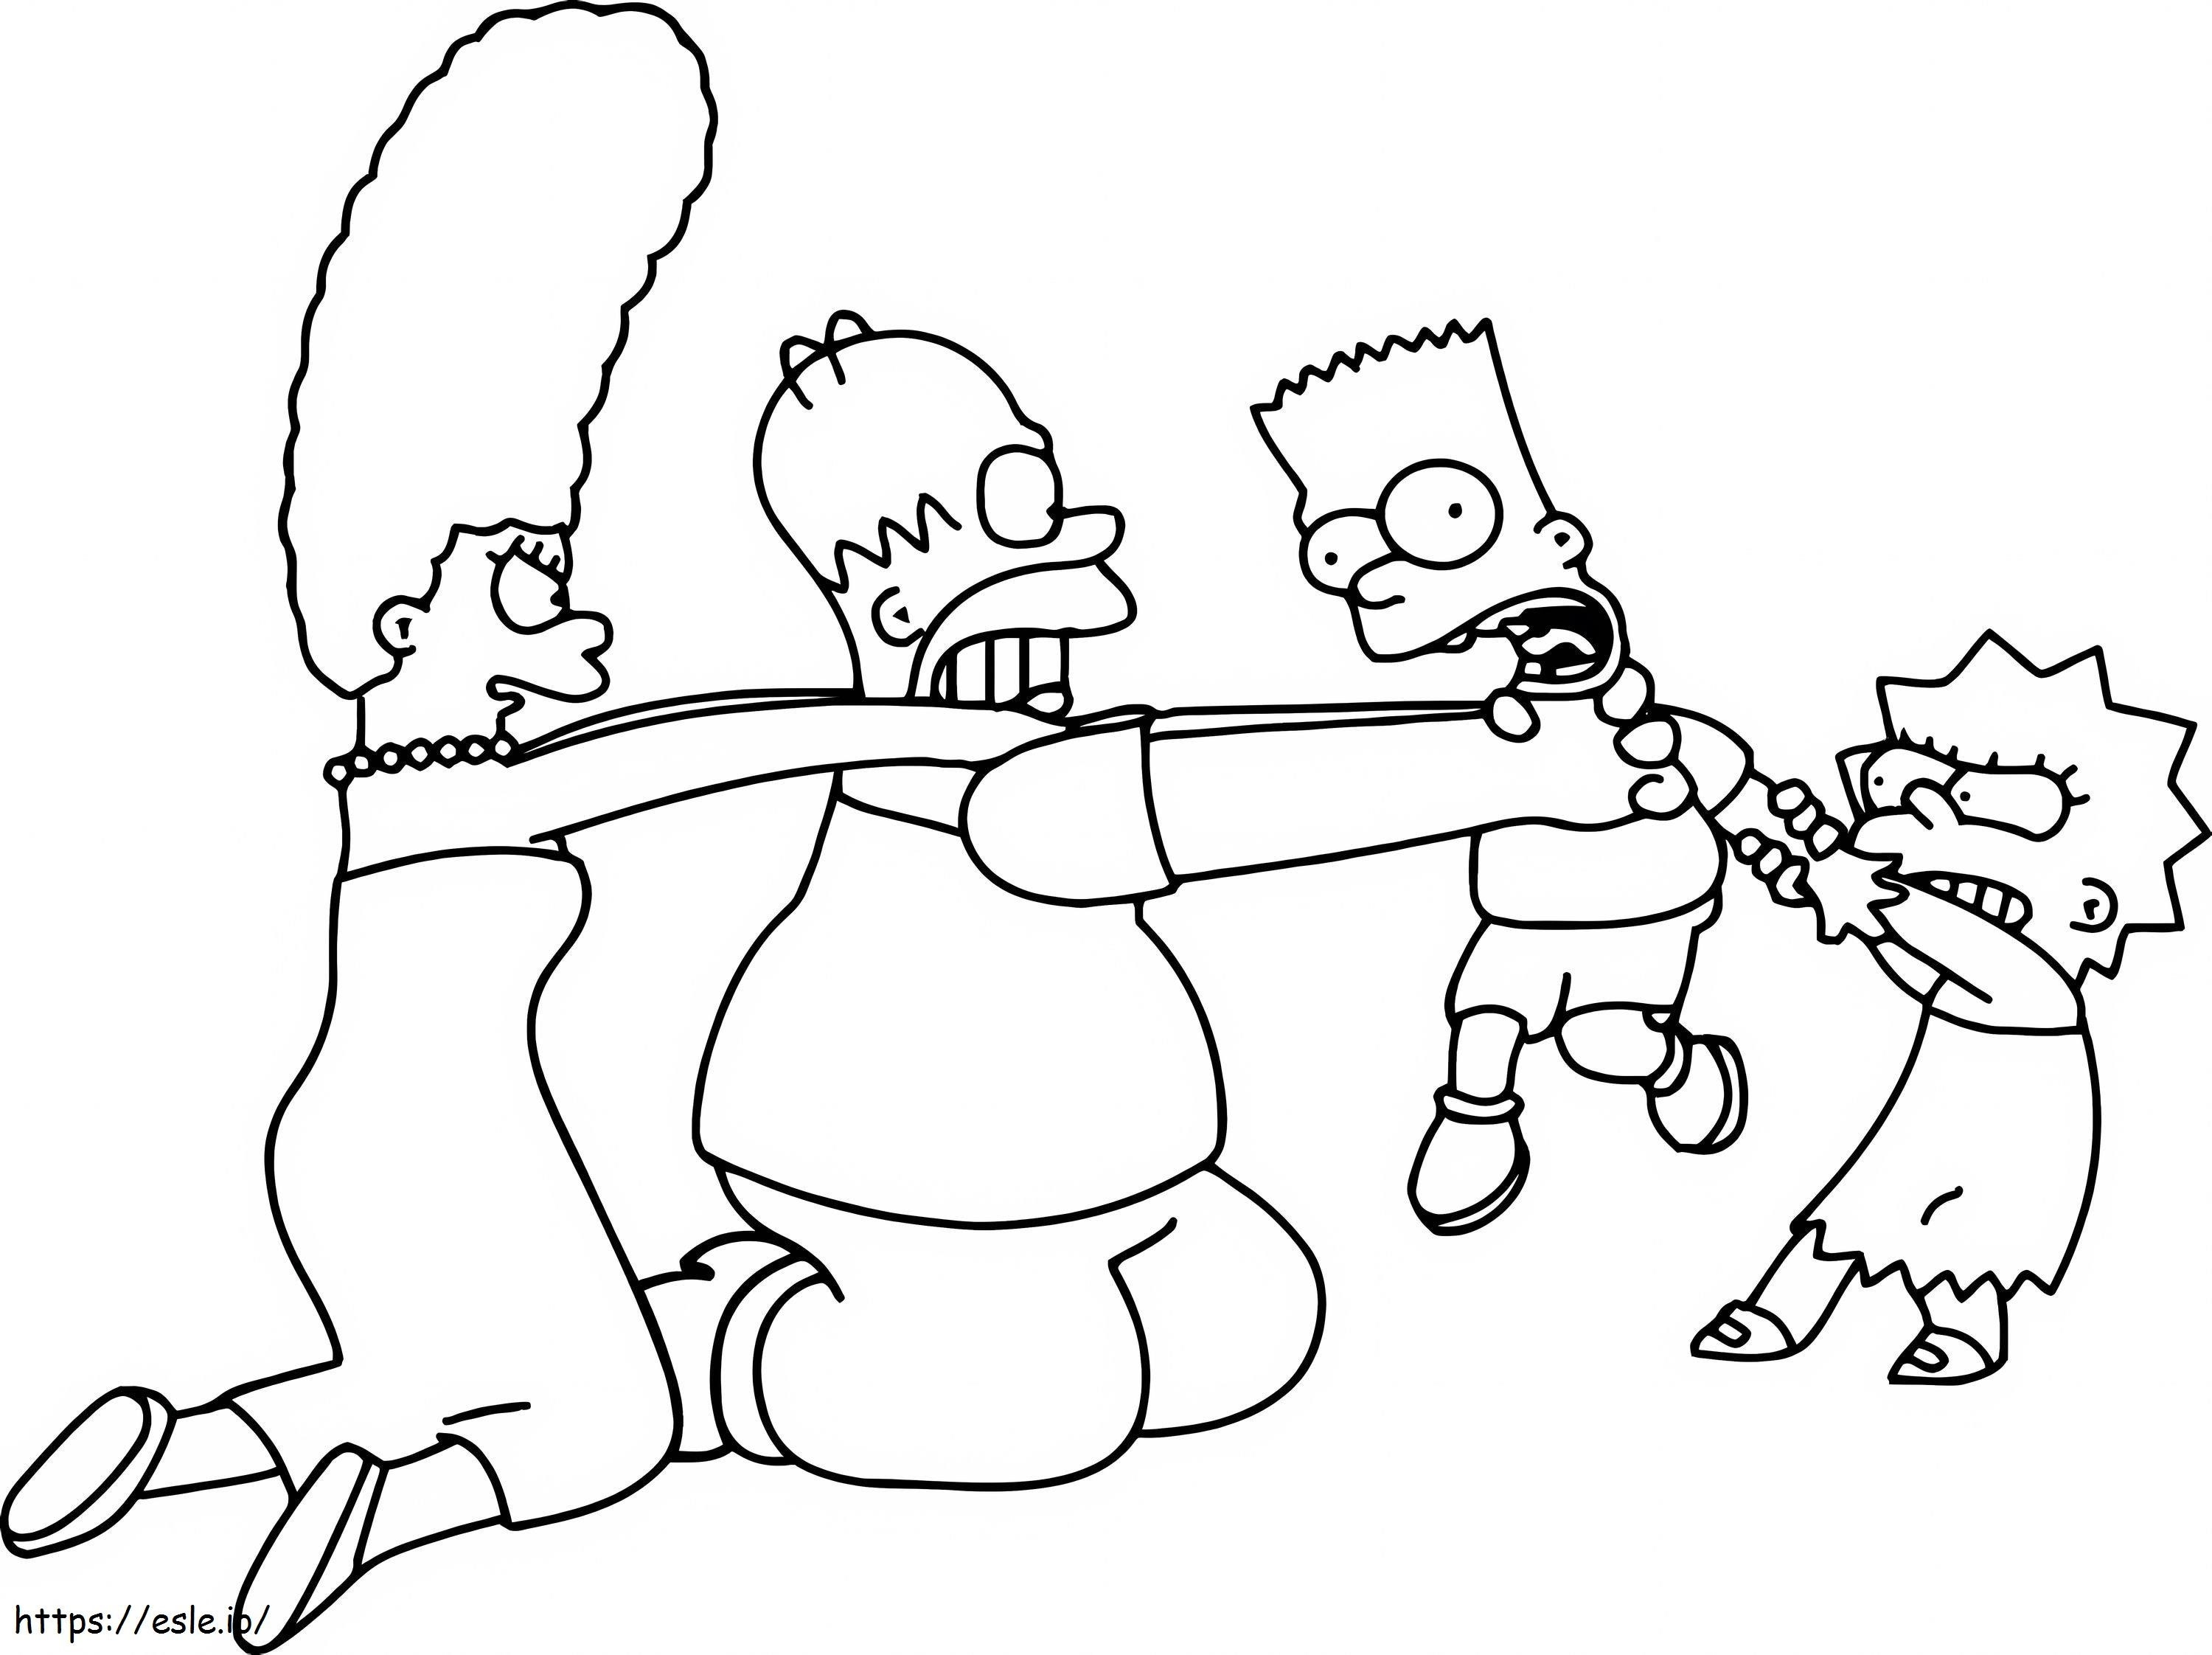 Die Simpsons-Familie hat Spaß ausmalbilder